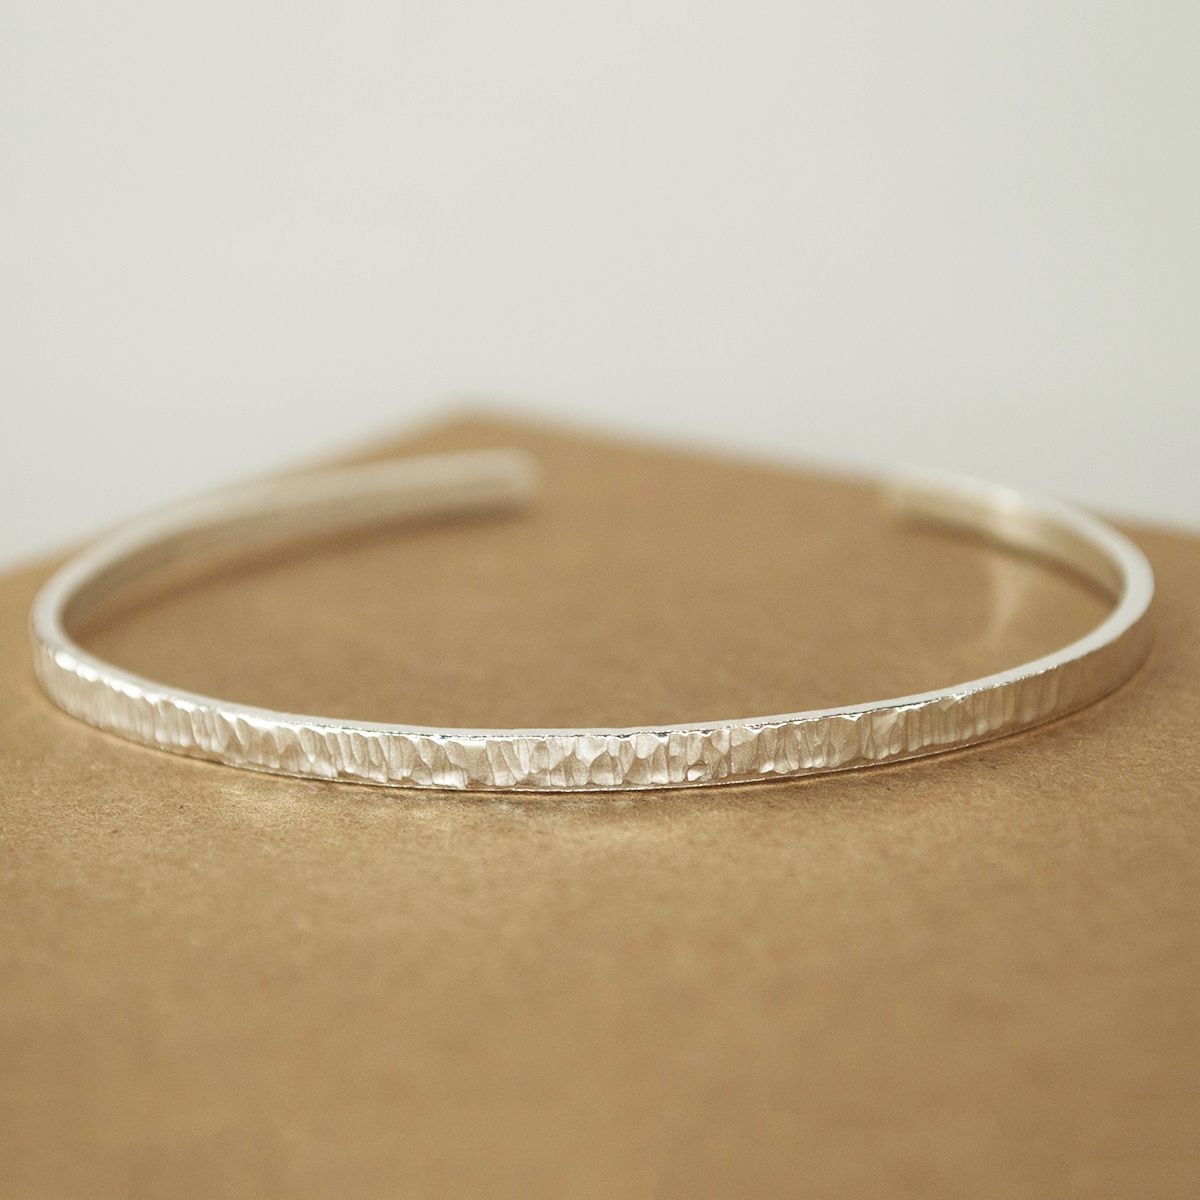 PLAIN ROUND Cuff bracelet, hammered silver